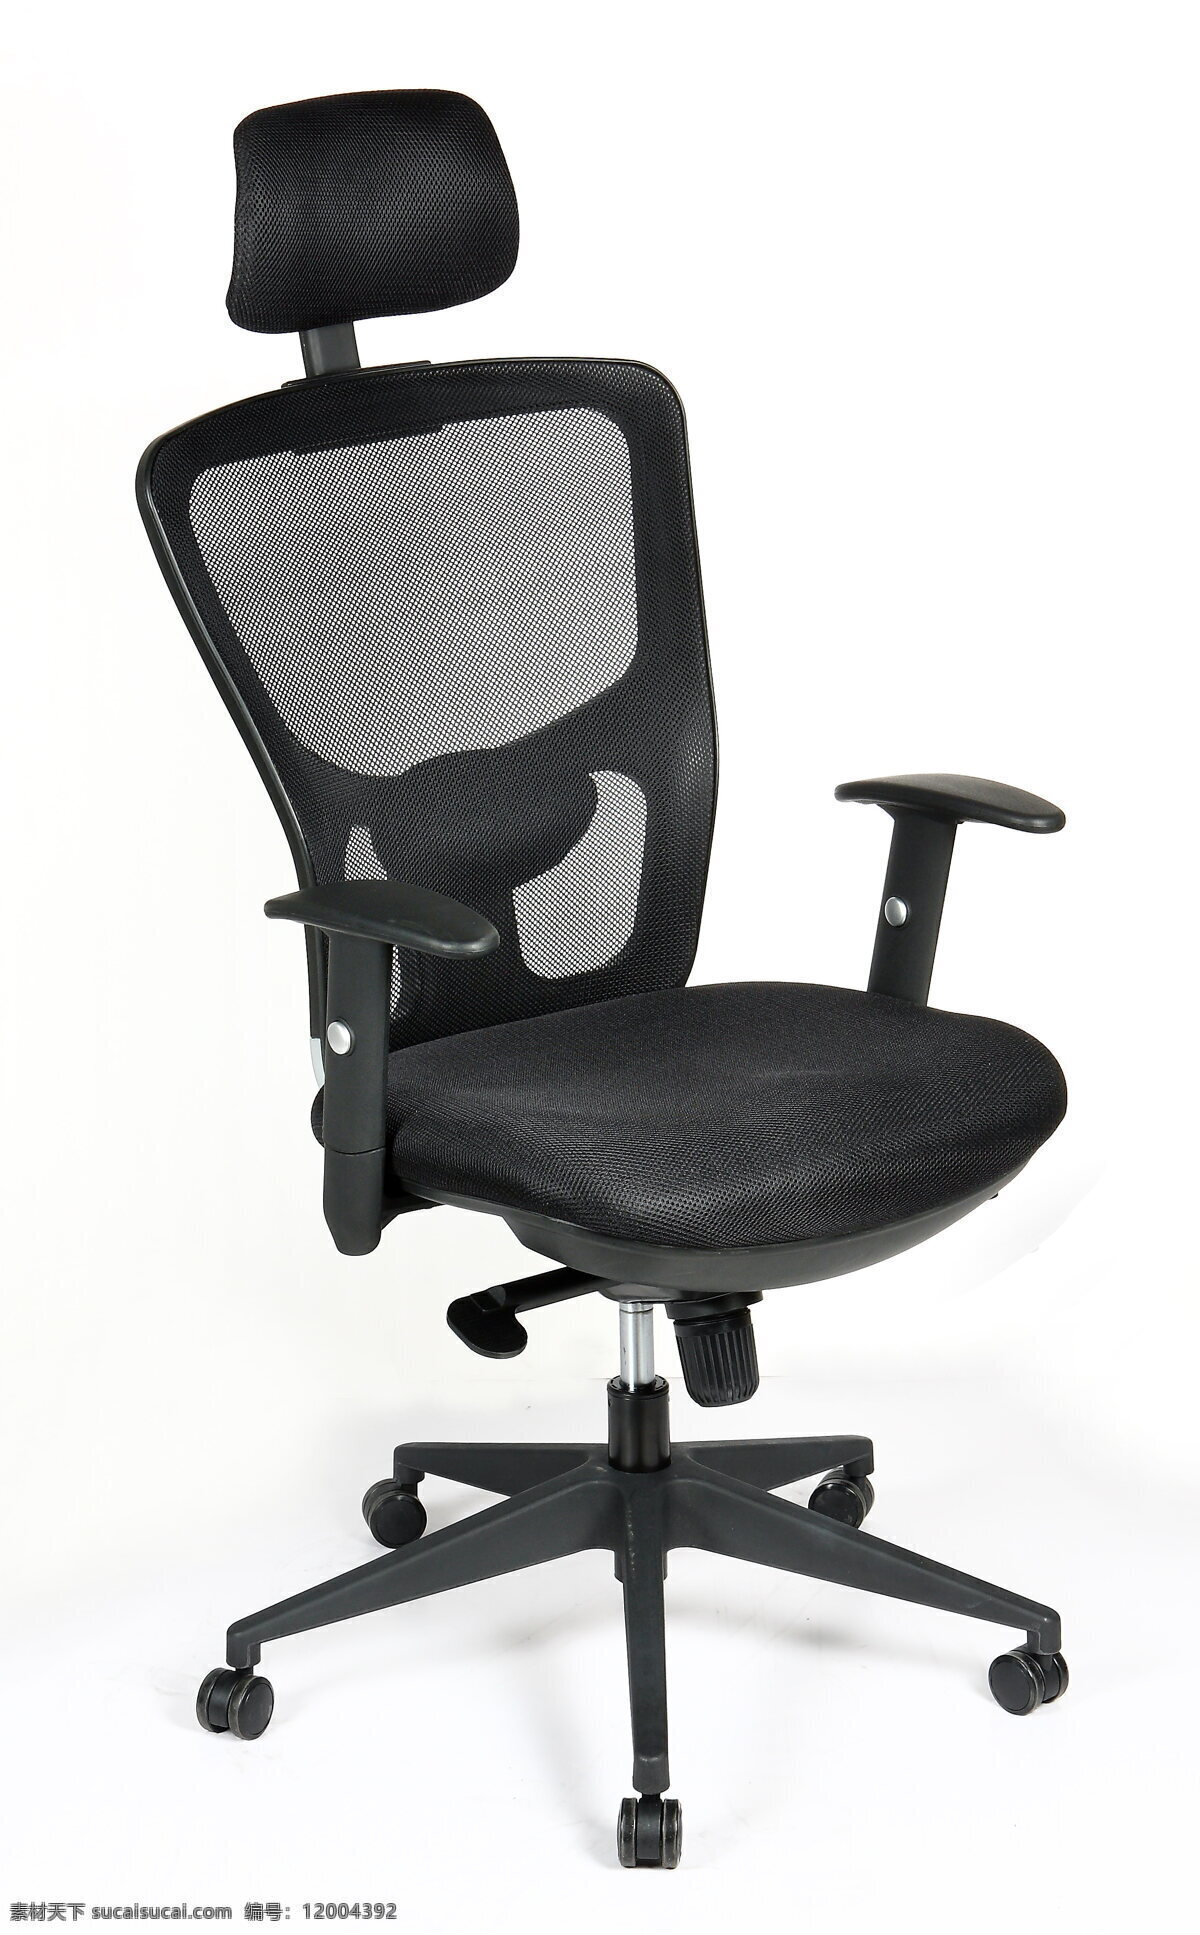 办公椅 转椅 老板椅 经理椅 活动椅子 可升降转椅 办公家具 办公器材 商务金融 商务素材